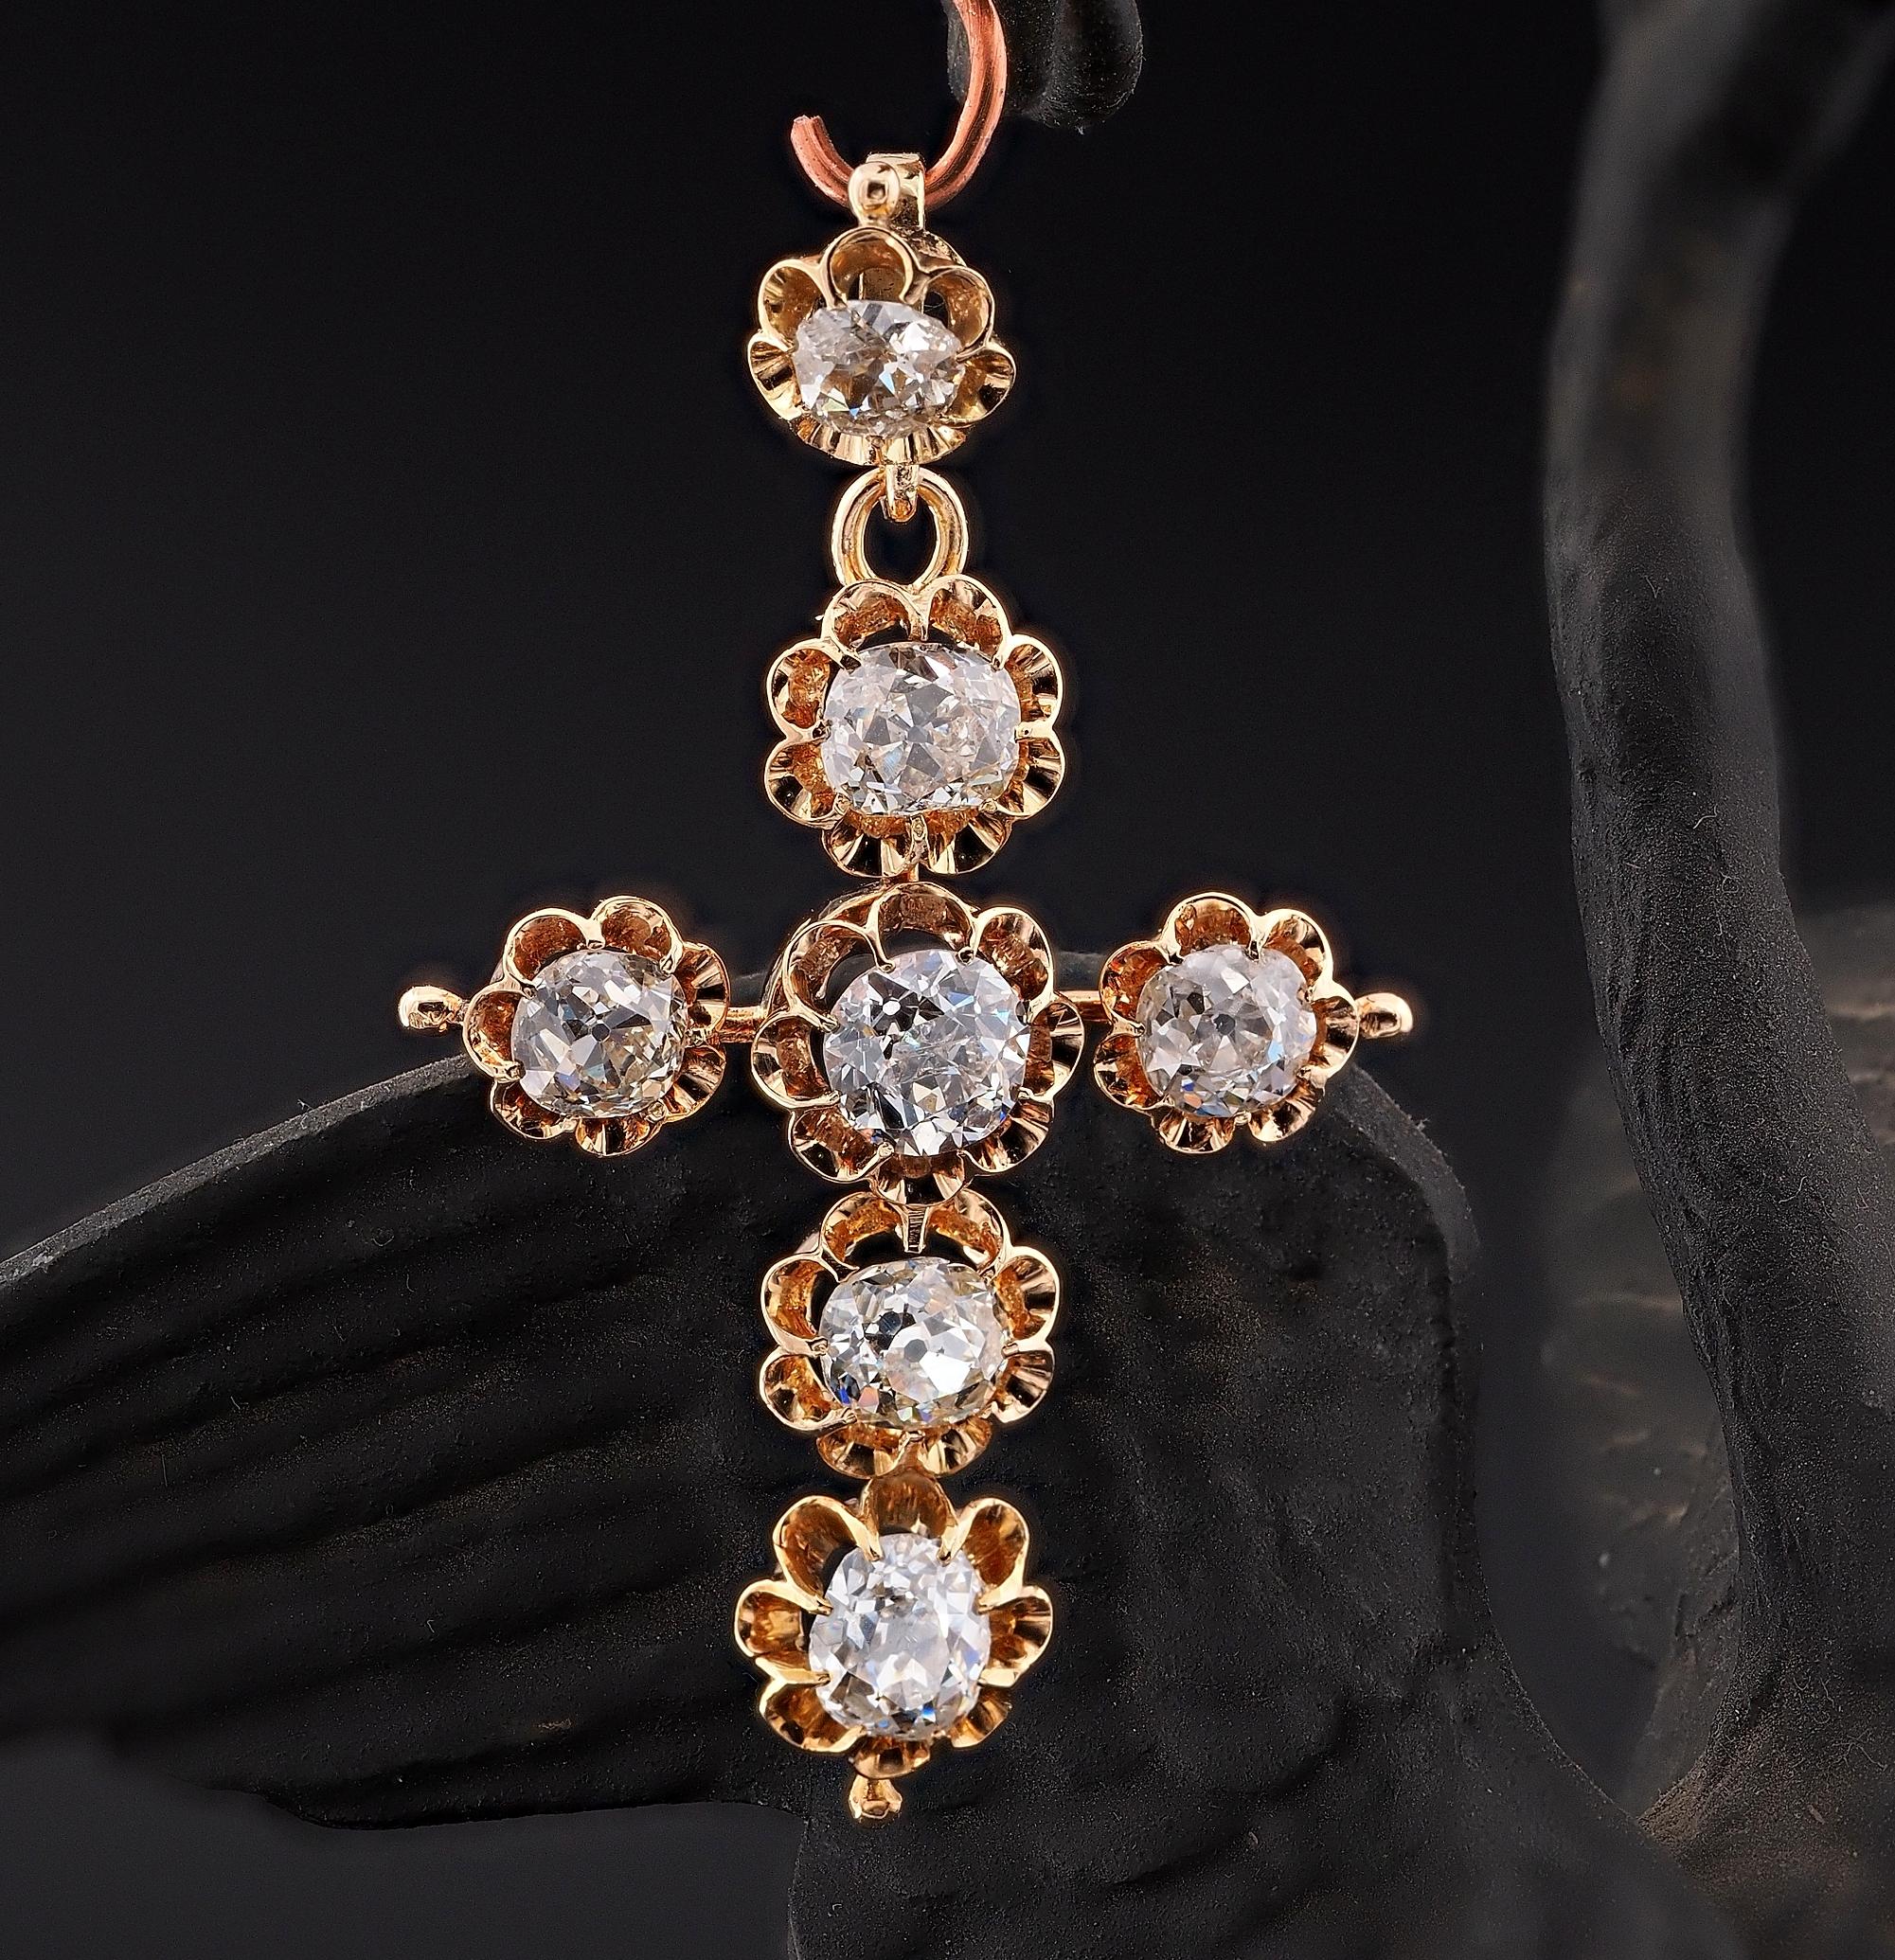 Kostbar!
Beeindruckend seltenes viktorianisches Diamant-Kreuz aus den Jahren 1880/90 ca.
Wunderschönes Design in einer einfachen, aber wirkungsvollen, zeittypischen Krallenfassung aus massivem 18 KT Gold.
Seltener Diamantengehalt, bestehend aus 7